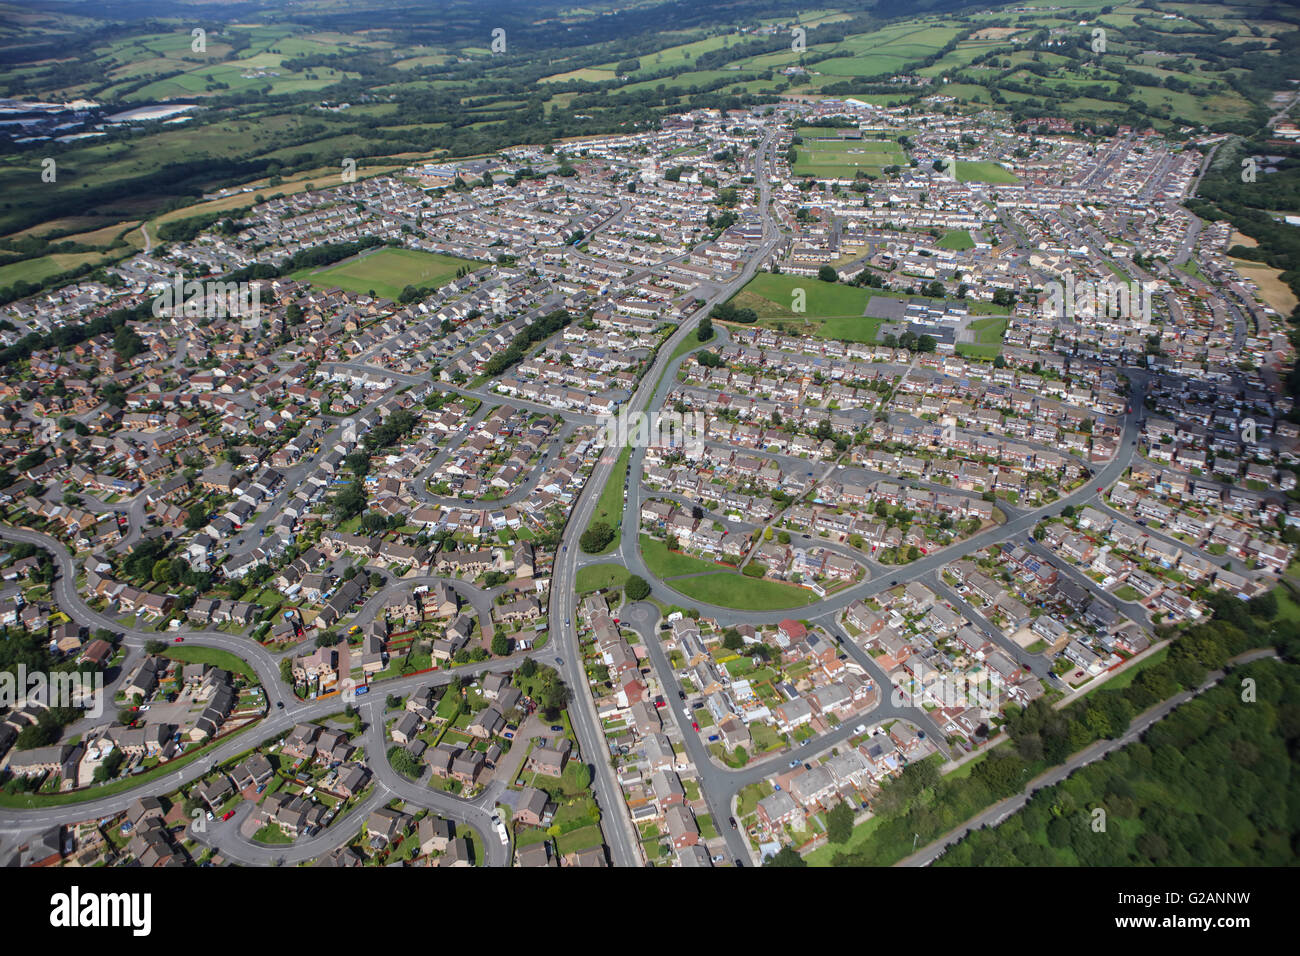 Una vista aérea de la ciudad de South Wales Llantrisant Foto de stock